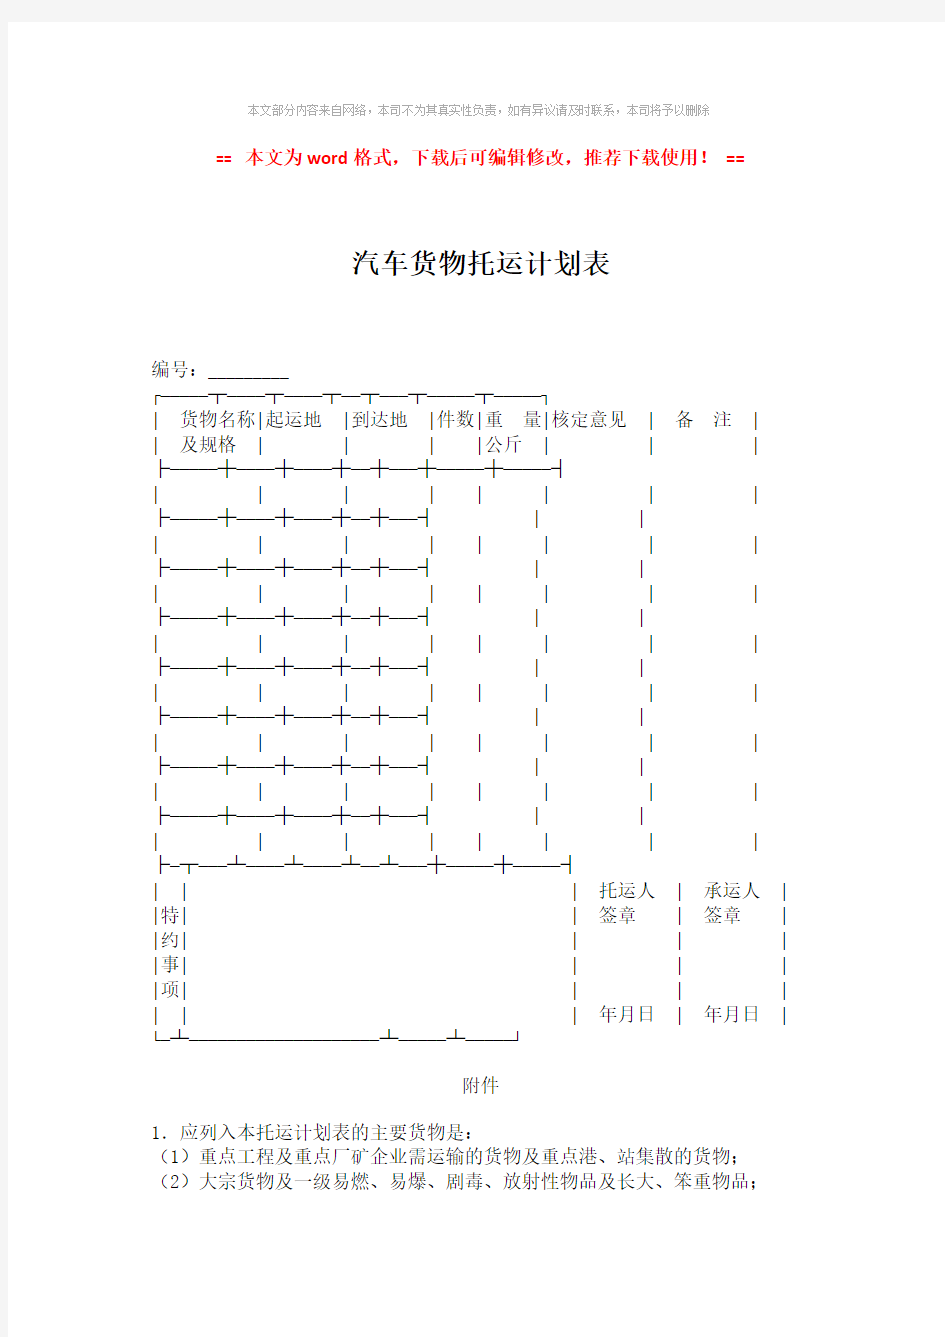 【参考文档】汽车货物托运计划表-word版 (2页)